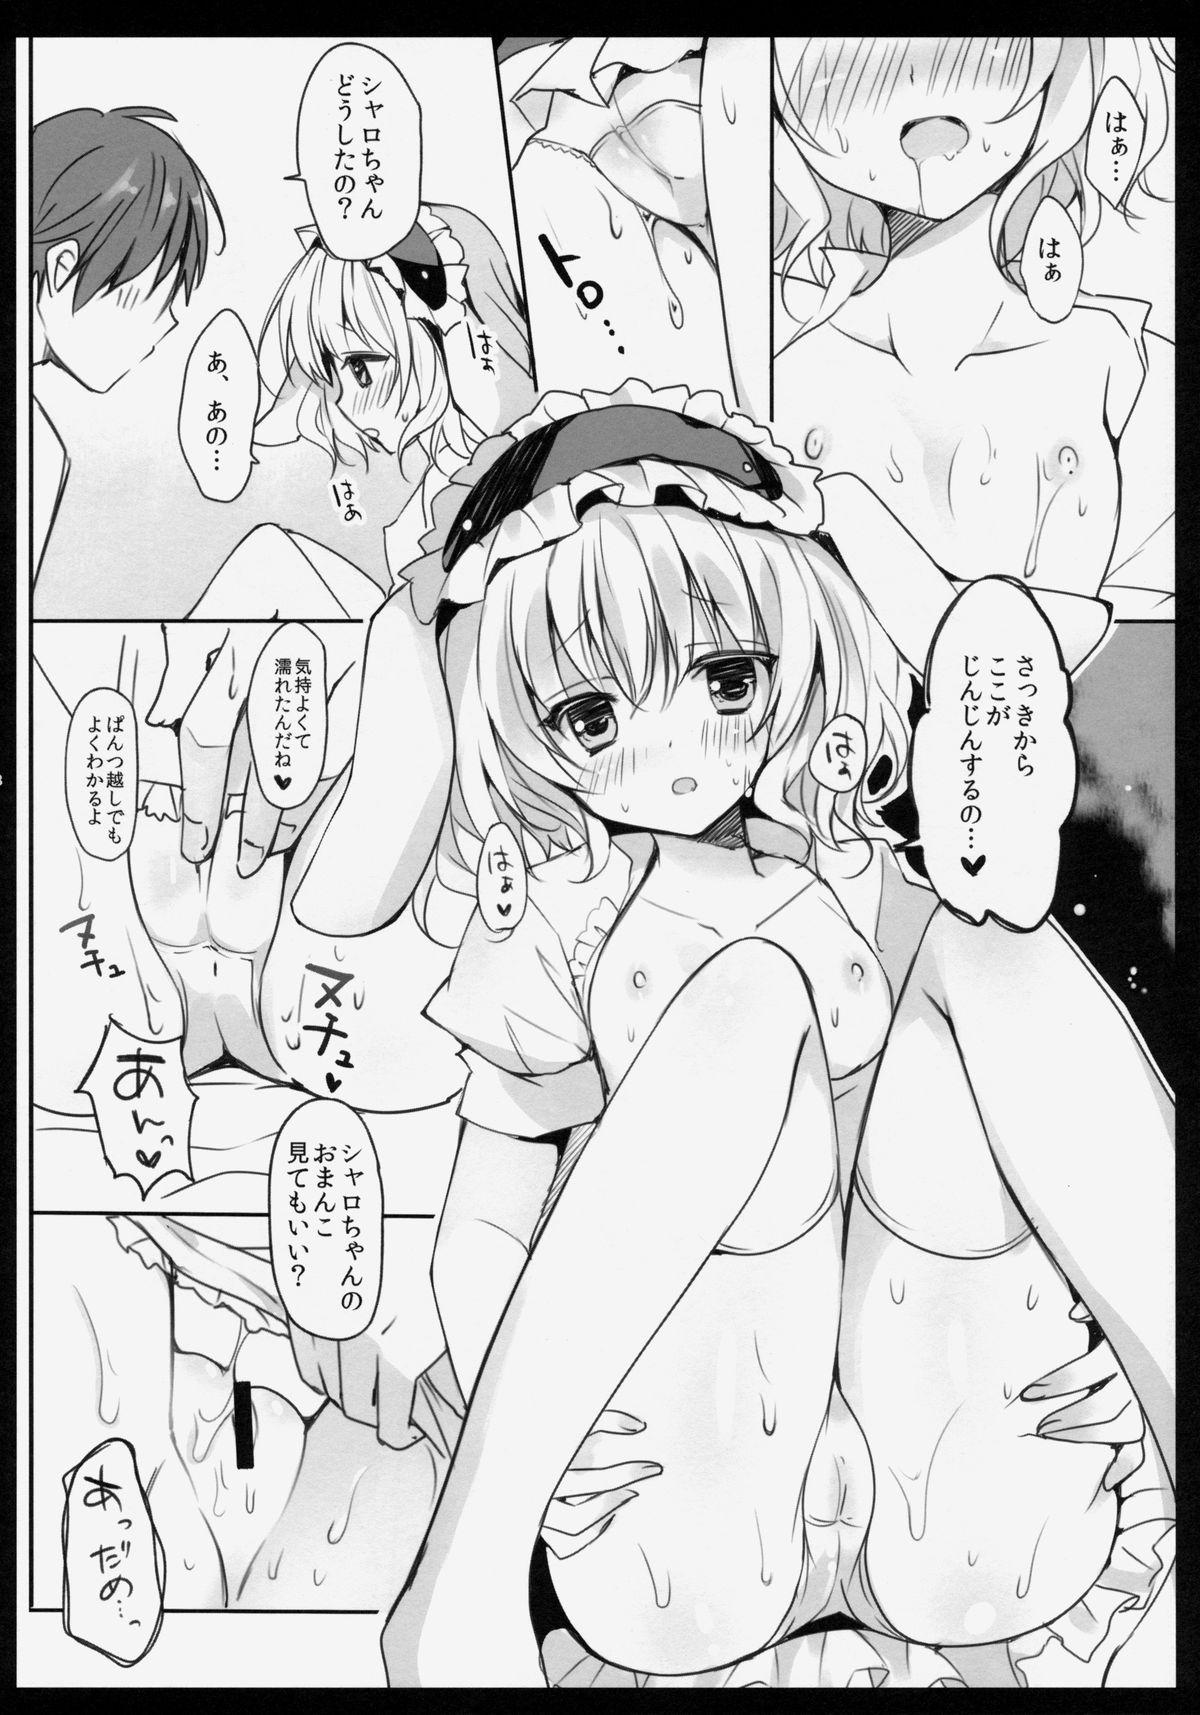 Bailando Gochuumon wa Sharo-chan desu ka? - Gochuumon wa usagi desu ka Holes - Page 7